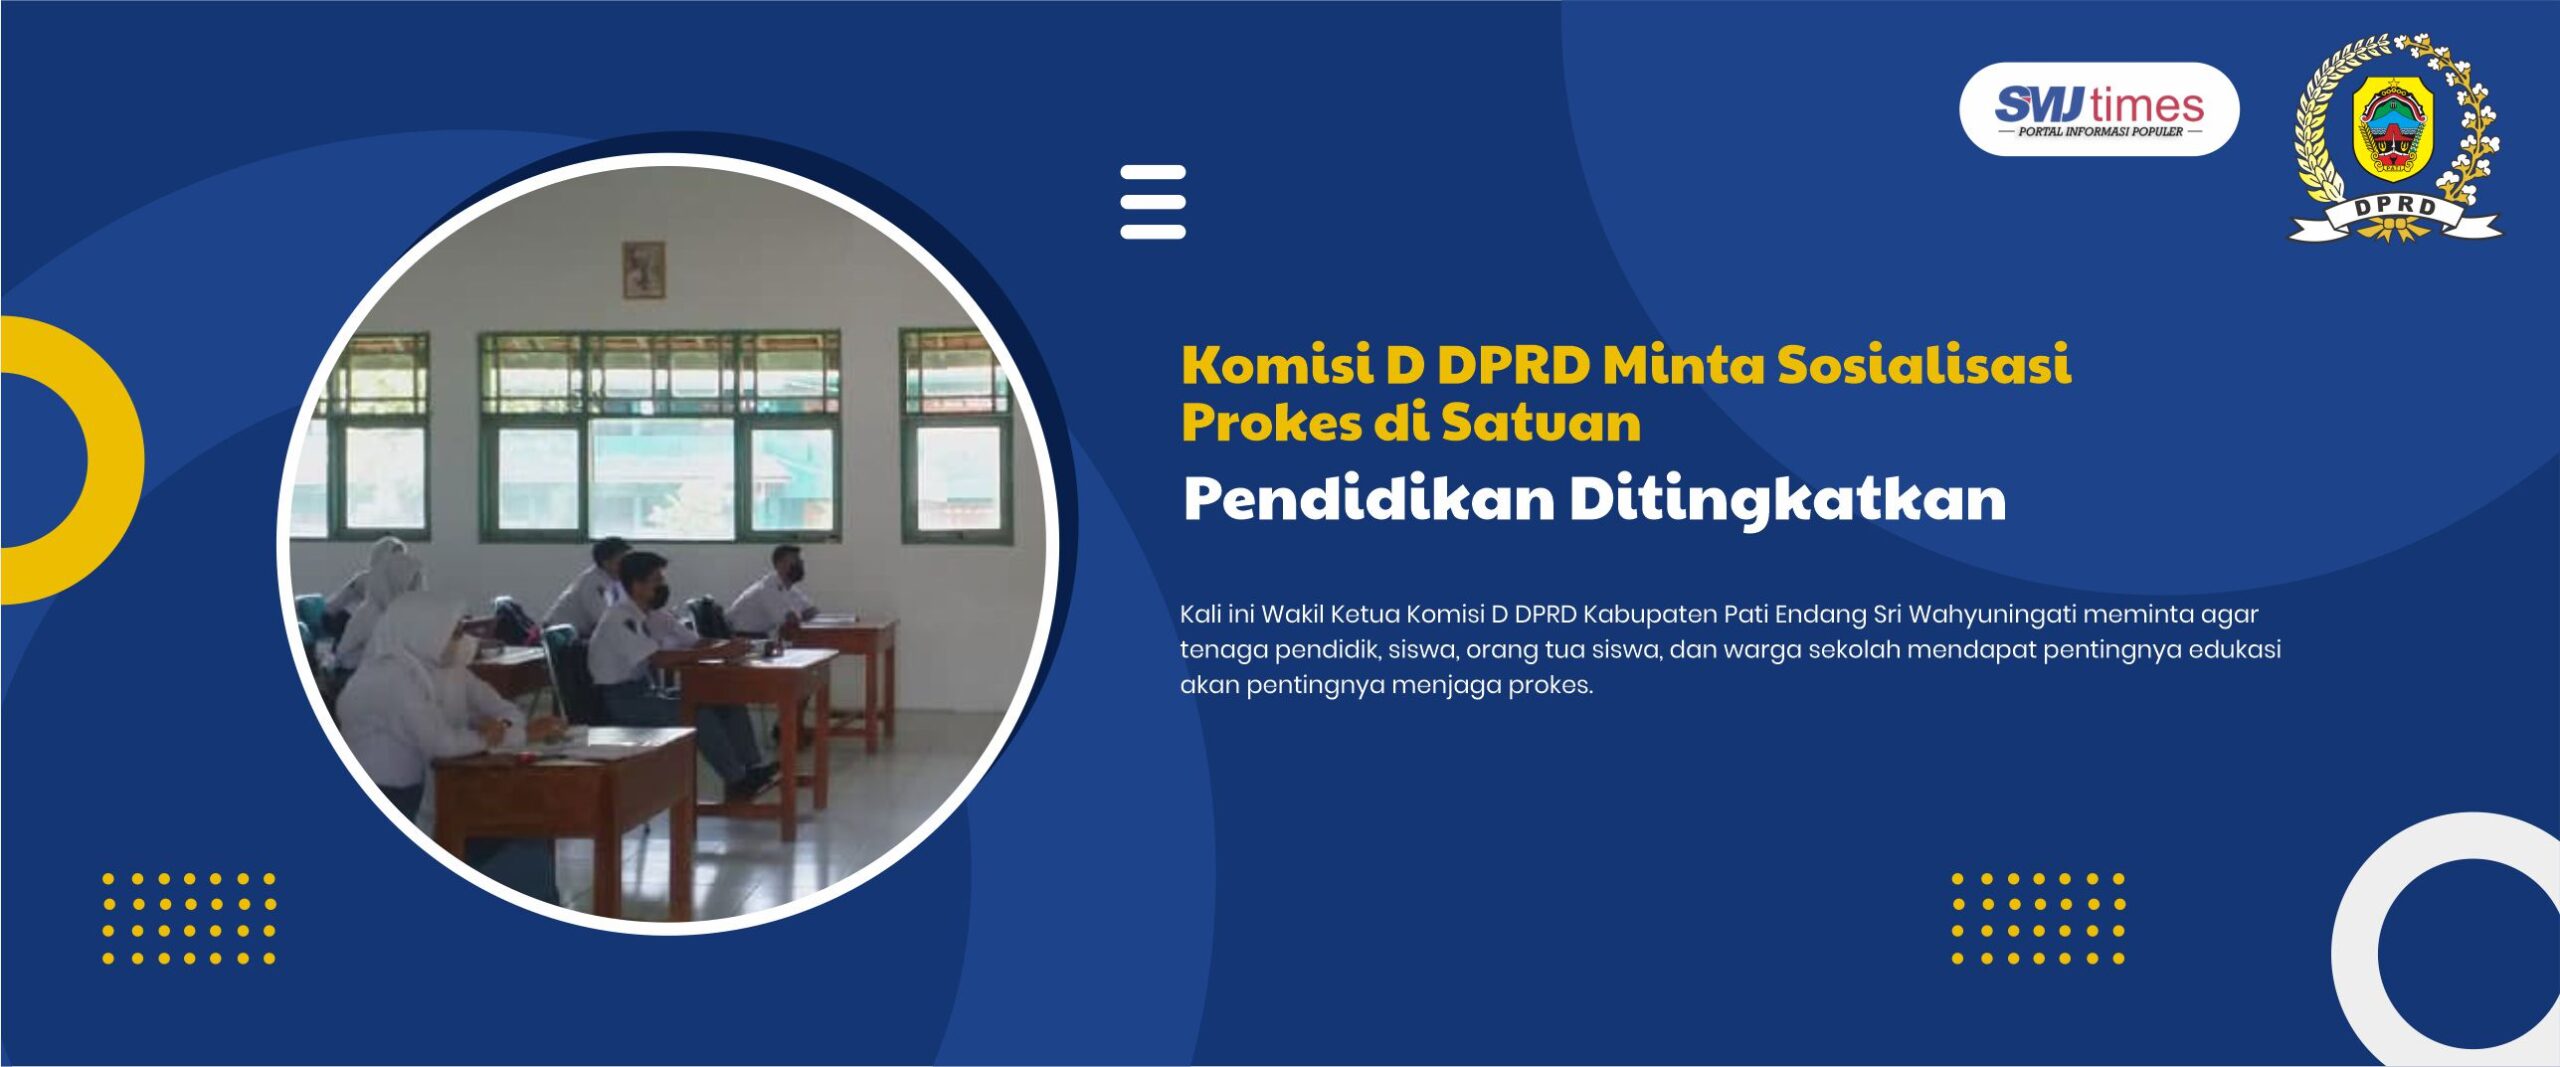 Komisi D DPRD Minta Sosialisasi Prokes di Satuan Pendidikan Ditingkatkan